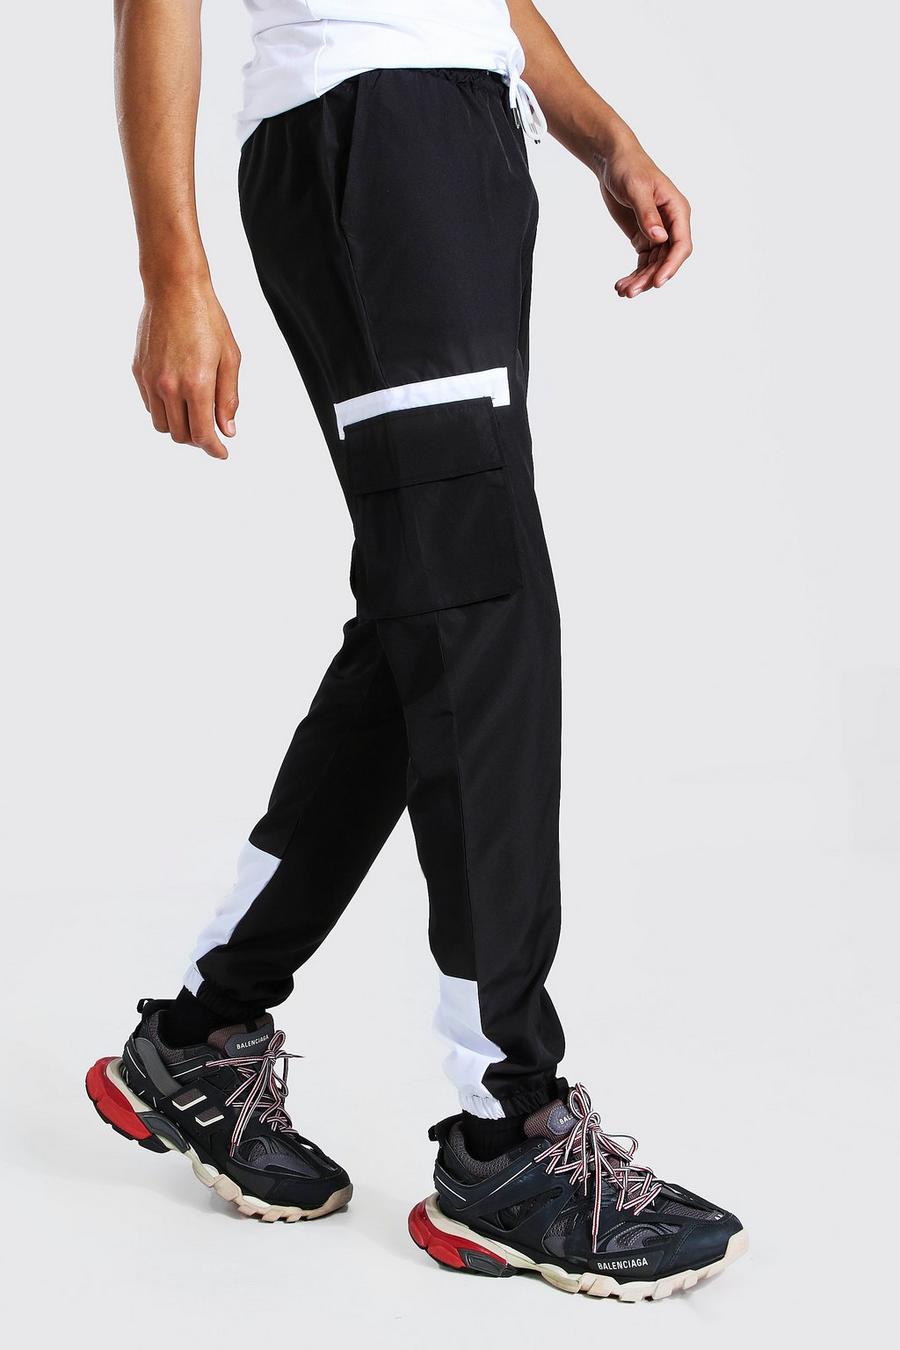 שחור מכנסי ריצה דגמ"ח בצבעים מנוגדים עם תווית image number 1